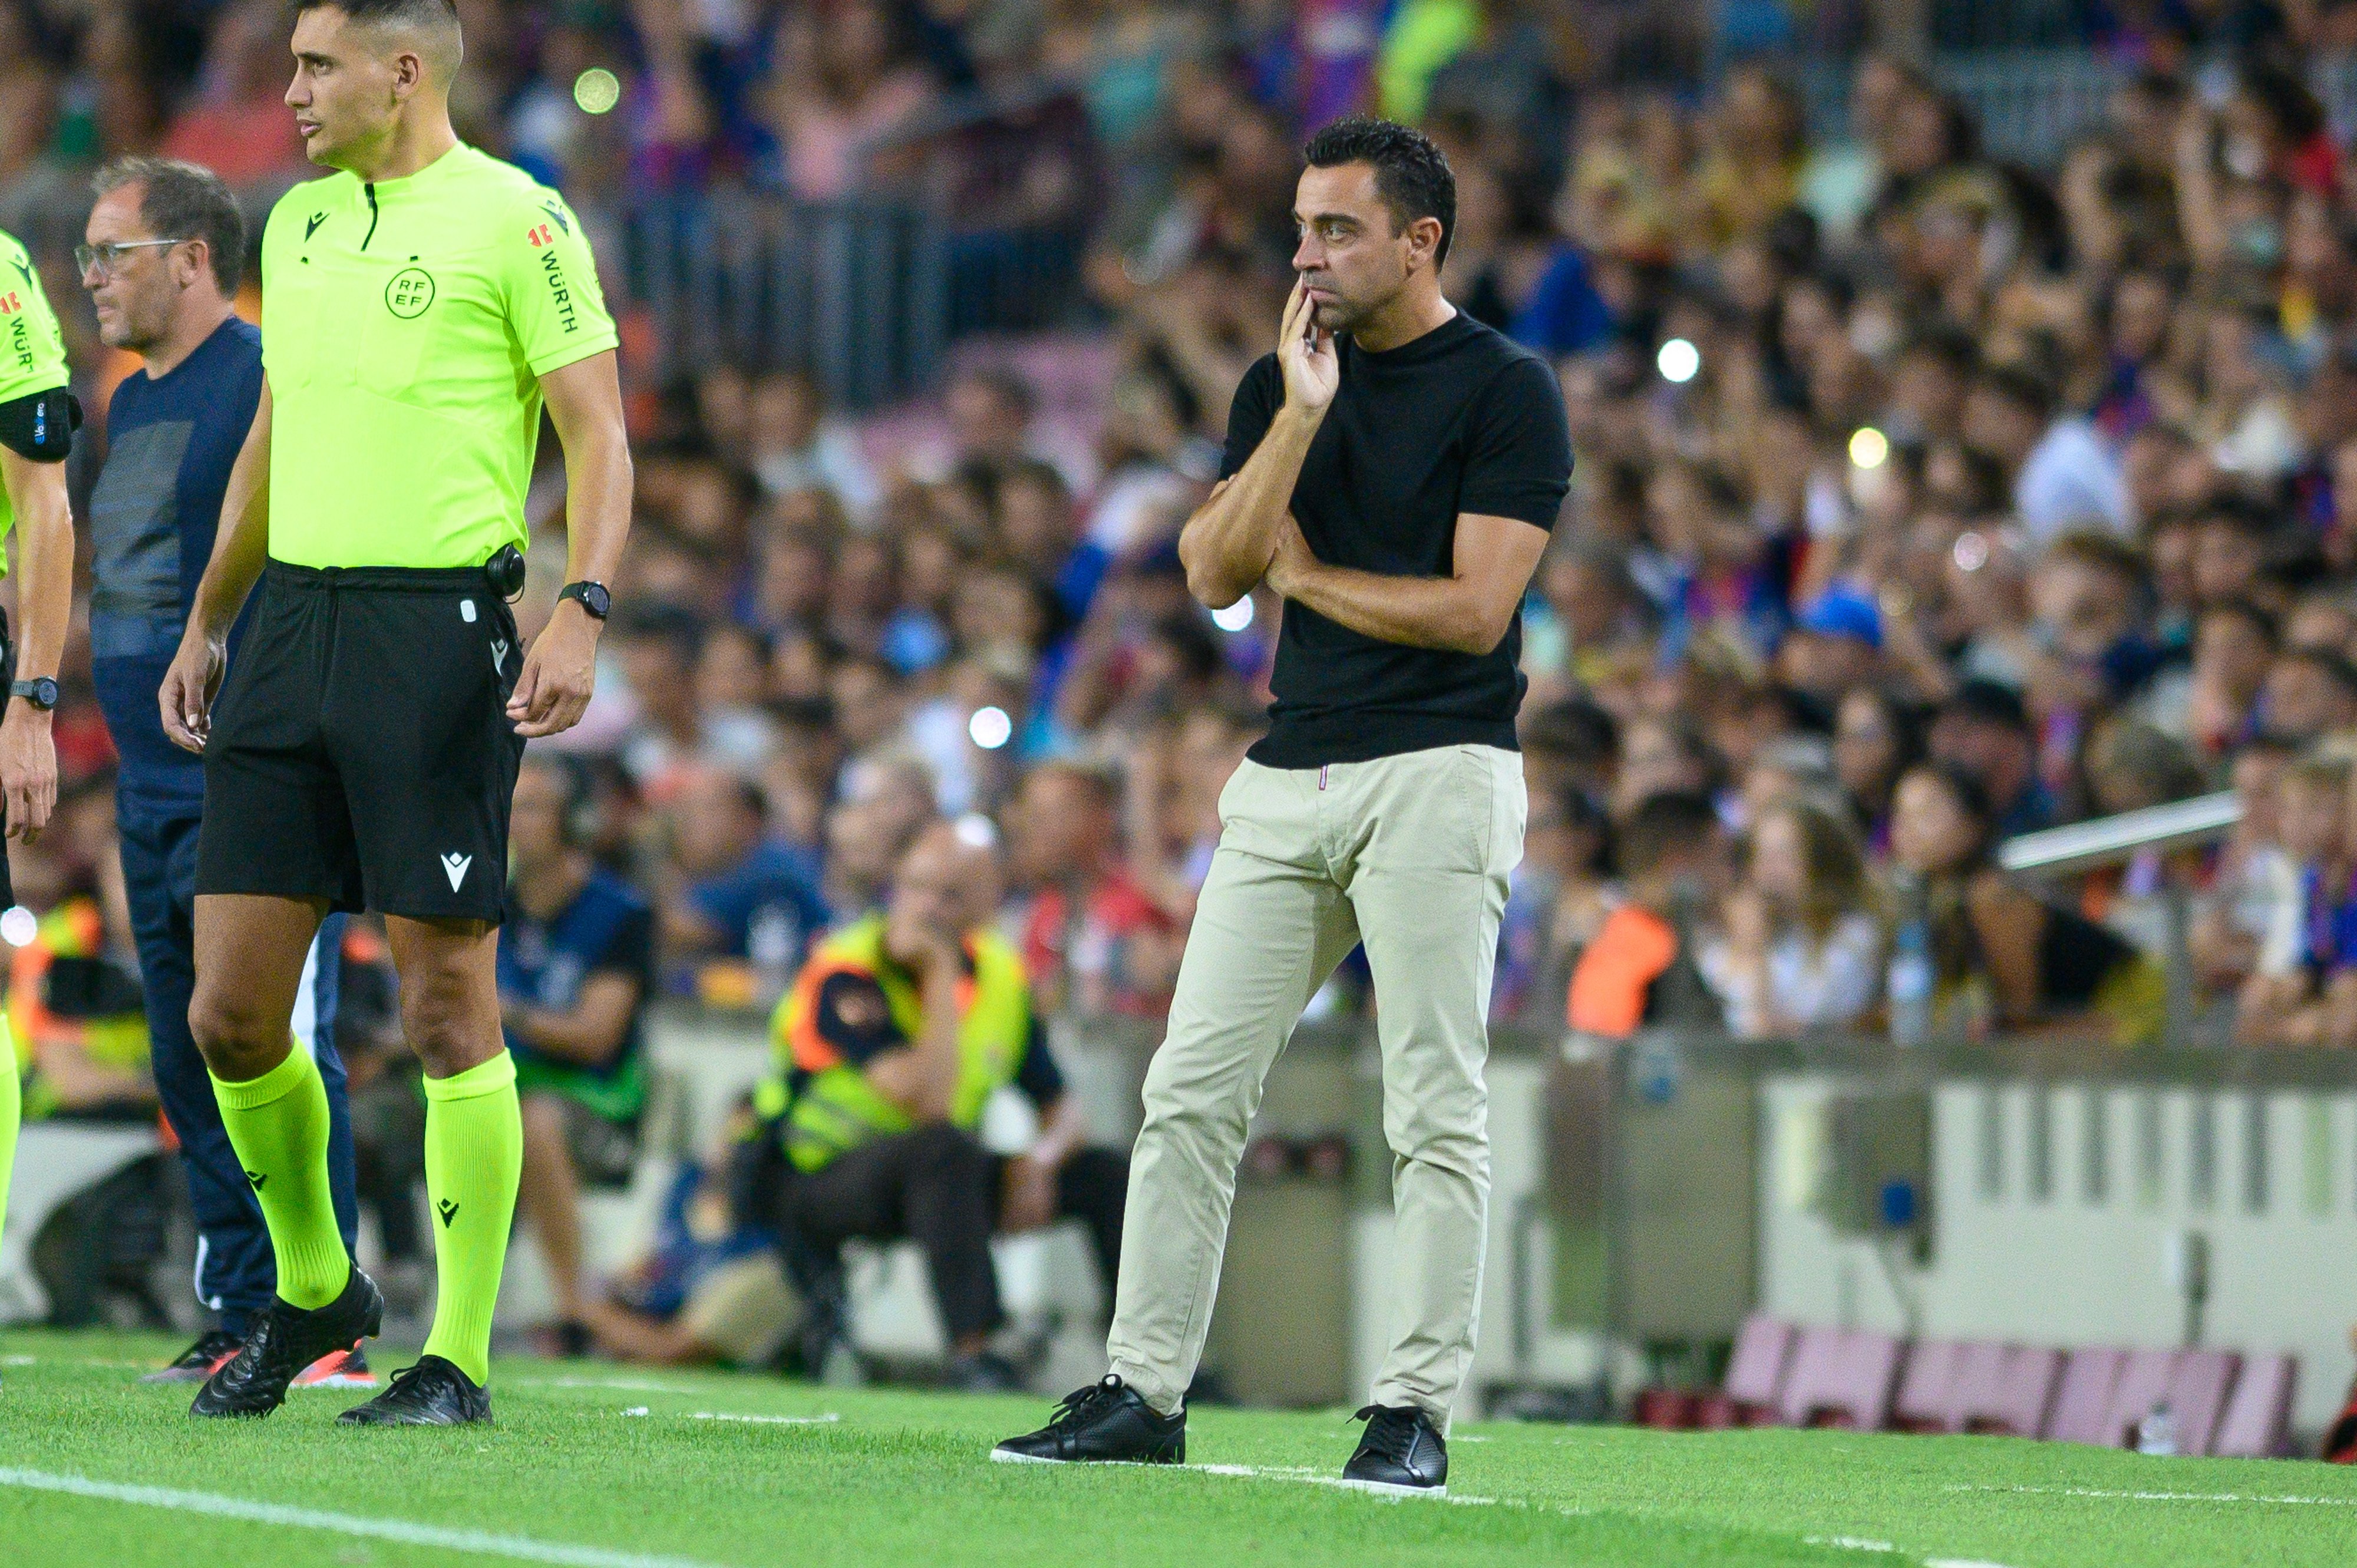 D'anar de sopars amb Xavi Hernández a la tensió màxima, hi ha un problema al vestidor del Barça